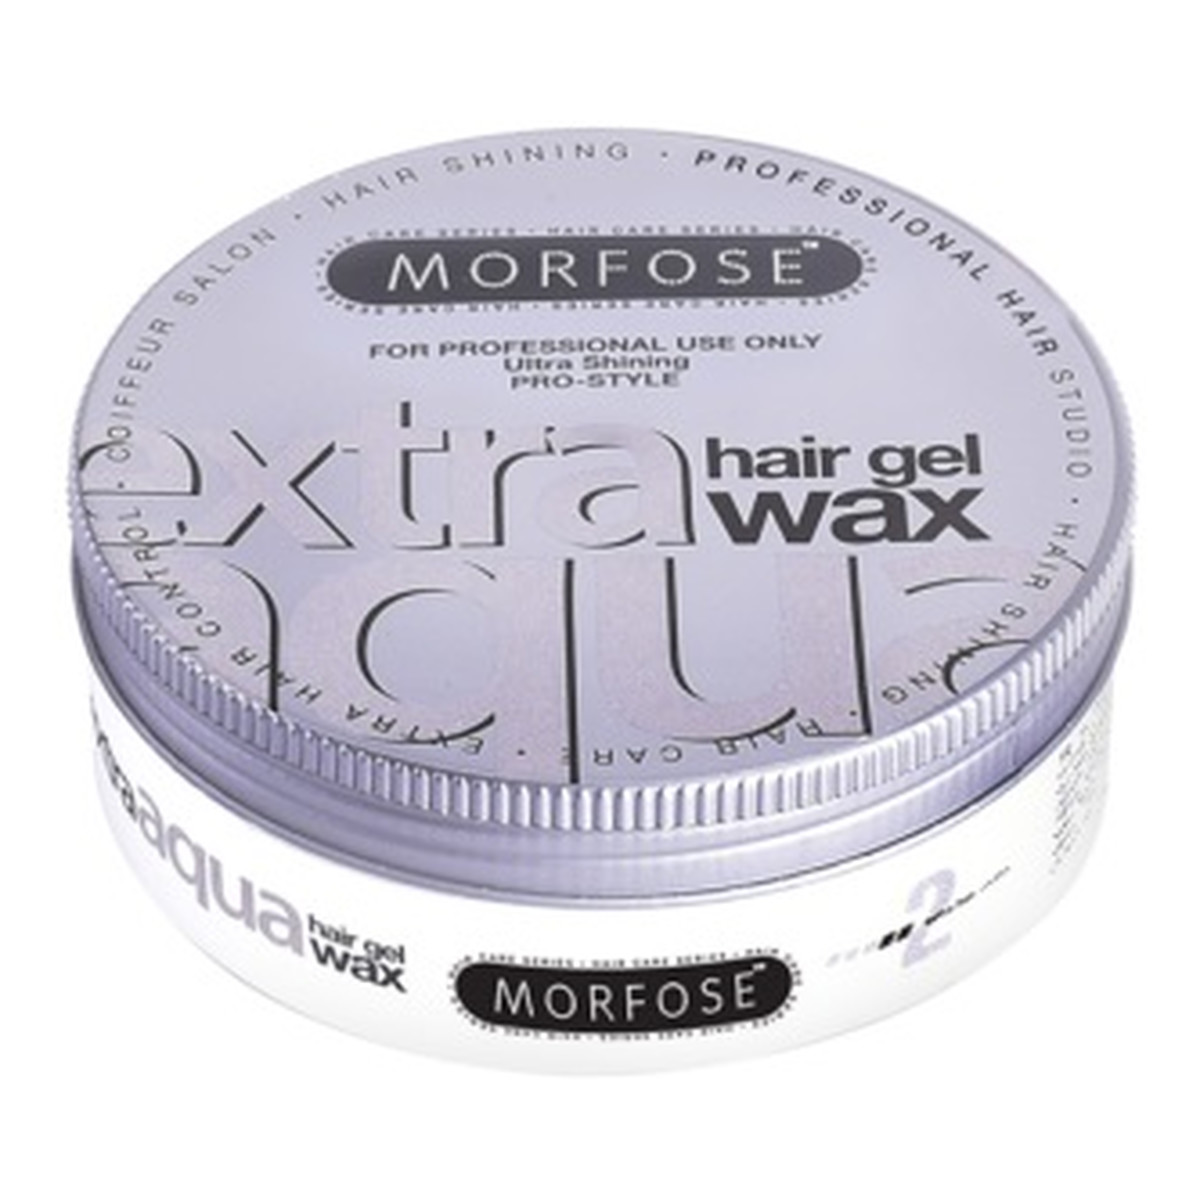 Morfose Extra aqua gel hair styling wax wosk do stylizacji włosów o zapachu gumy balonowej extra 150ml